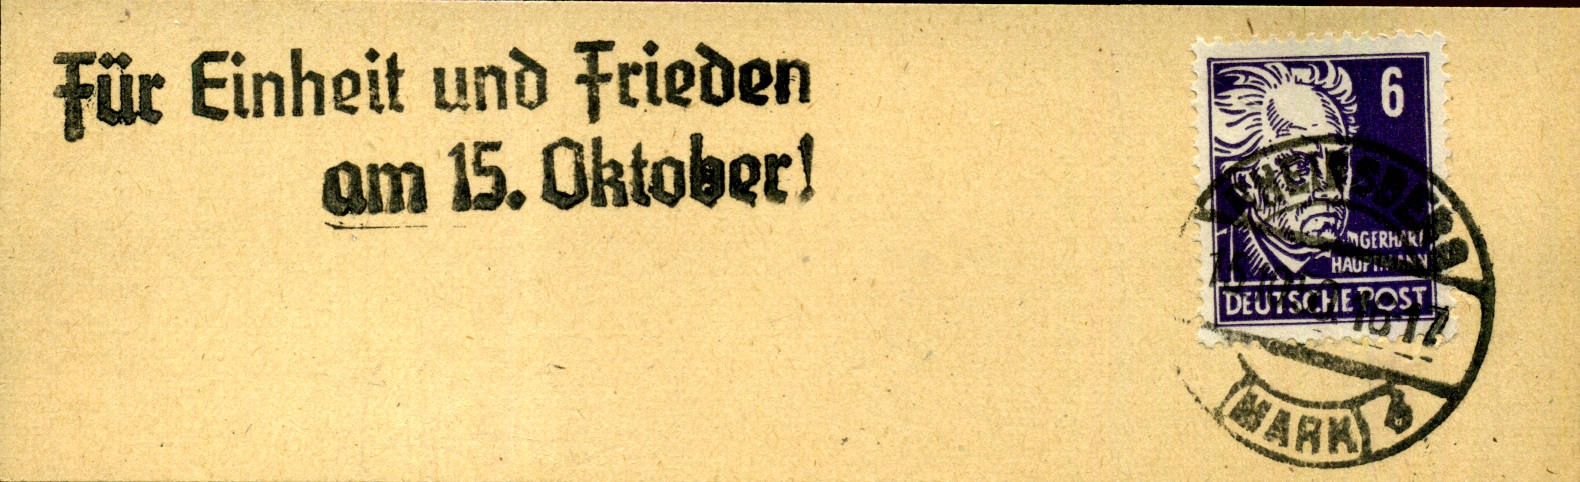 Für Einheit und Frieden am 15. Oktober! - Handstempel - Rheinsberg (MArk)